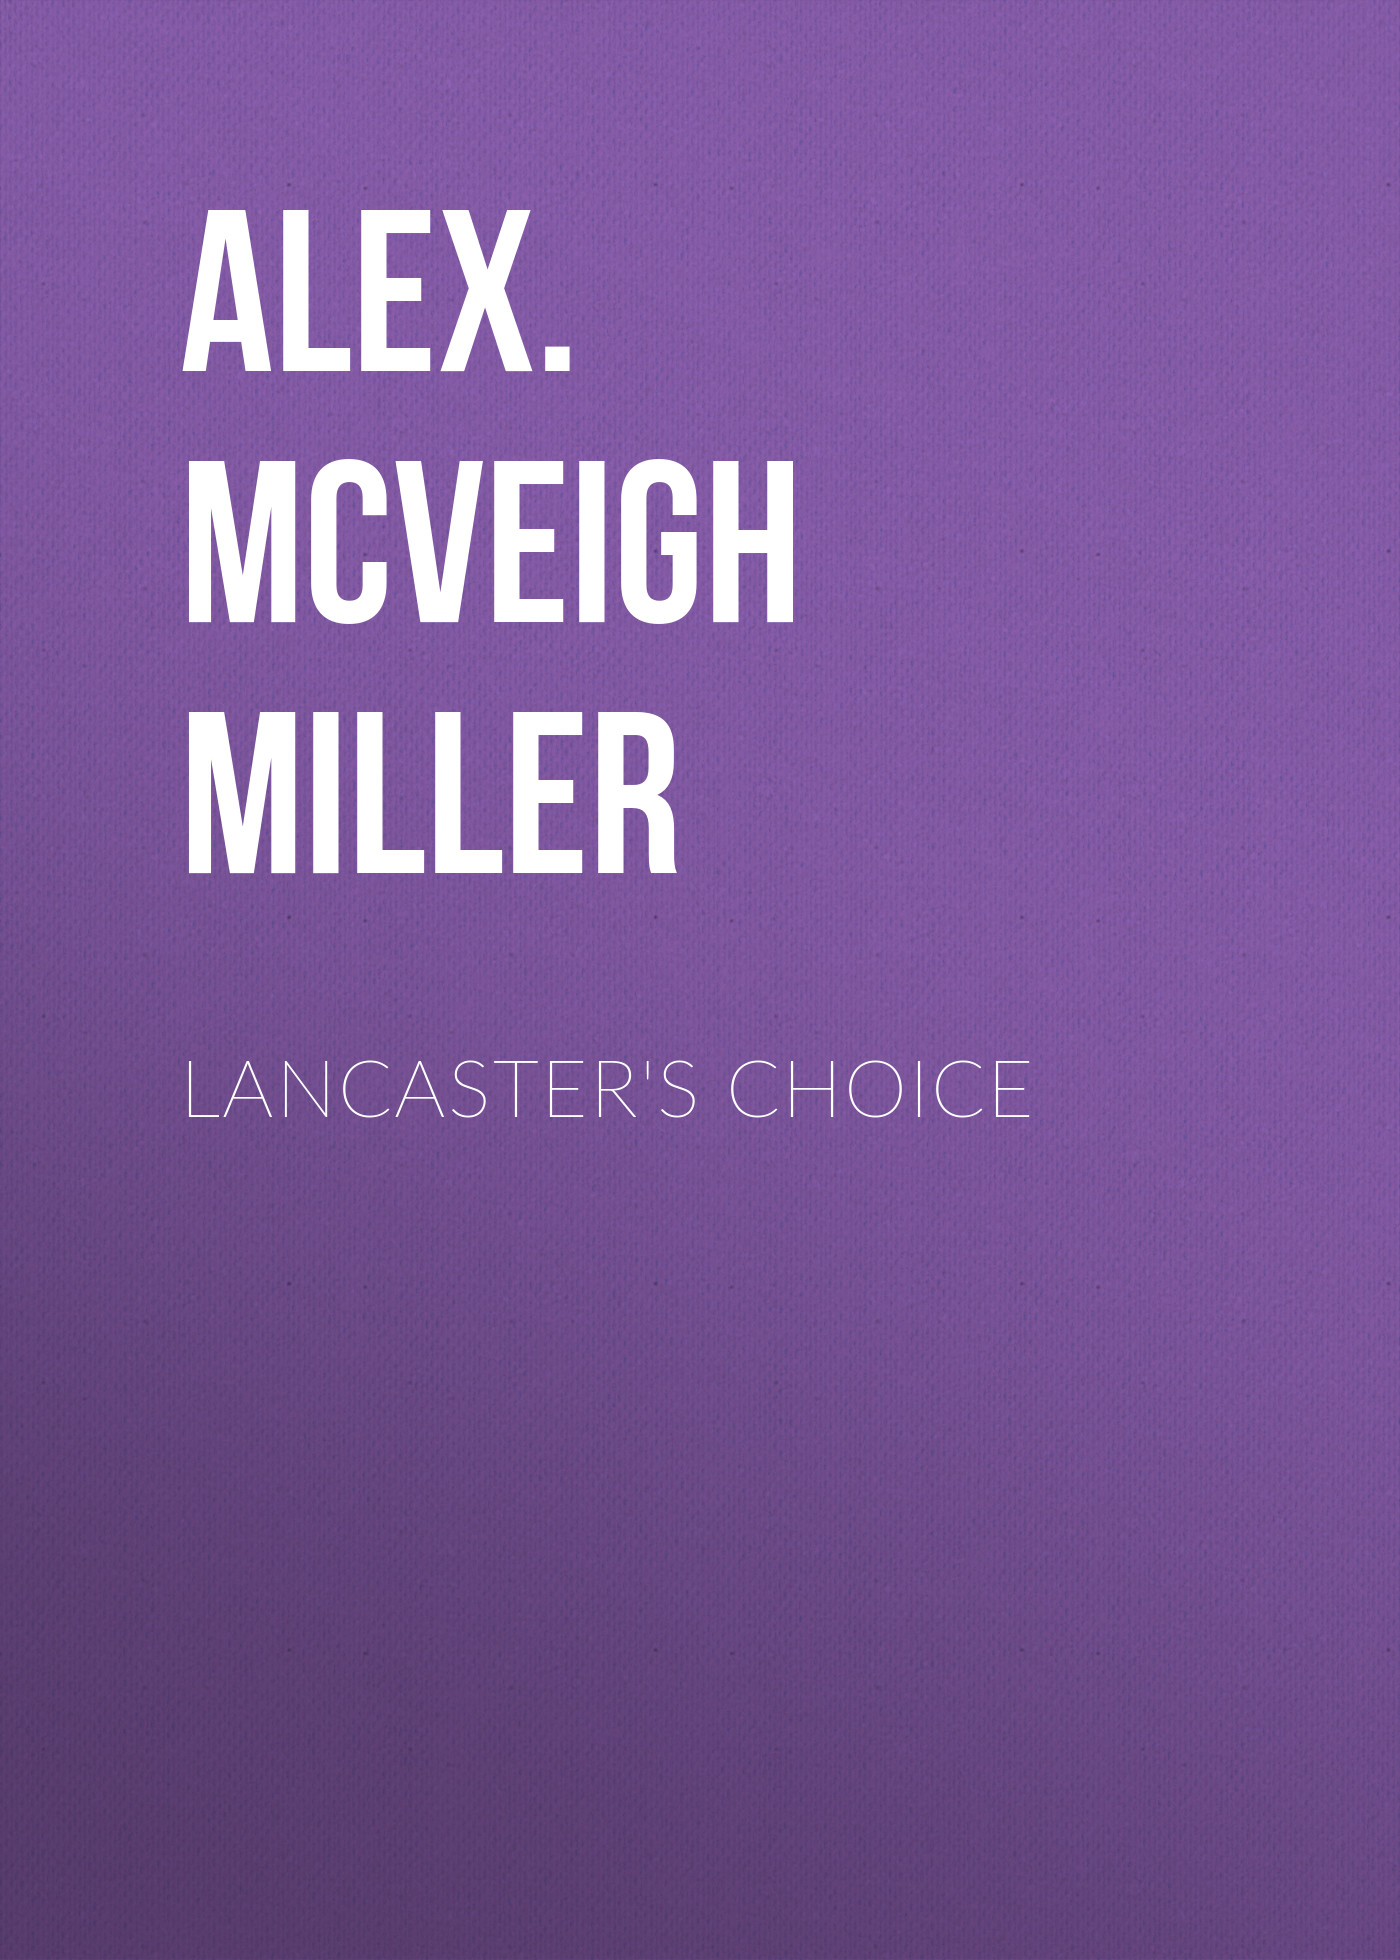 Книга Lancaster's Choice из серии , созданная Alex. McVeigh Miller, может относится к жанру Зарубежные любовные романы. Стоимость электронной книги Lancaster's Choice с идентификатором 35008817 составляет 0 руб.